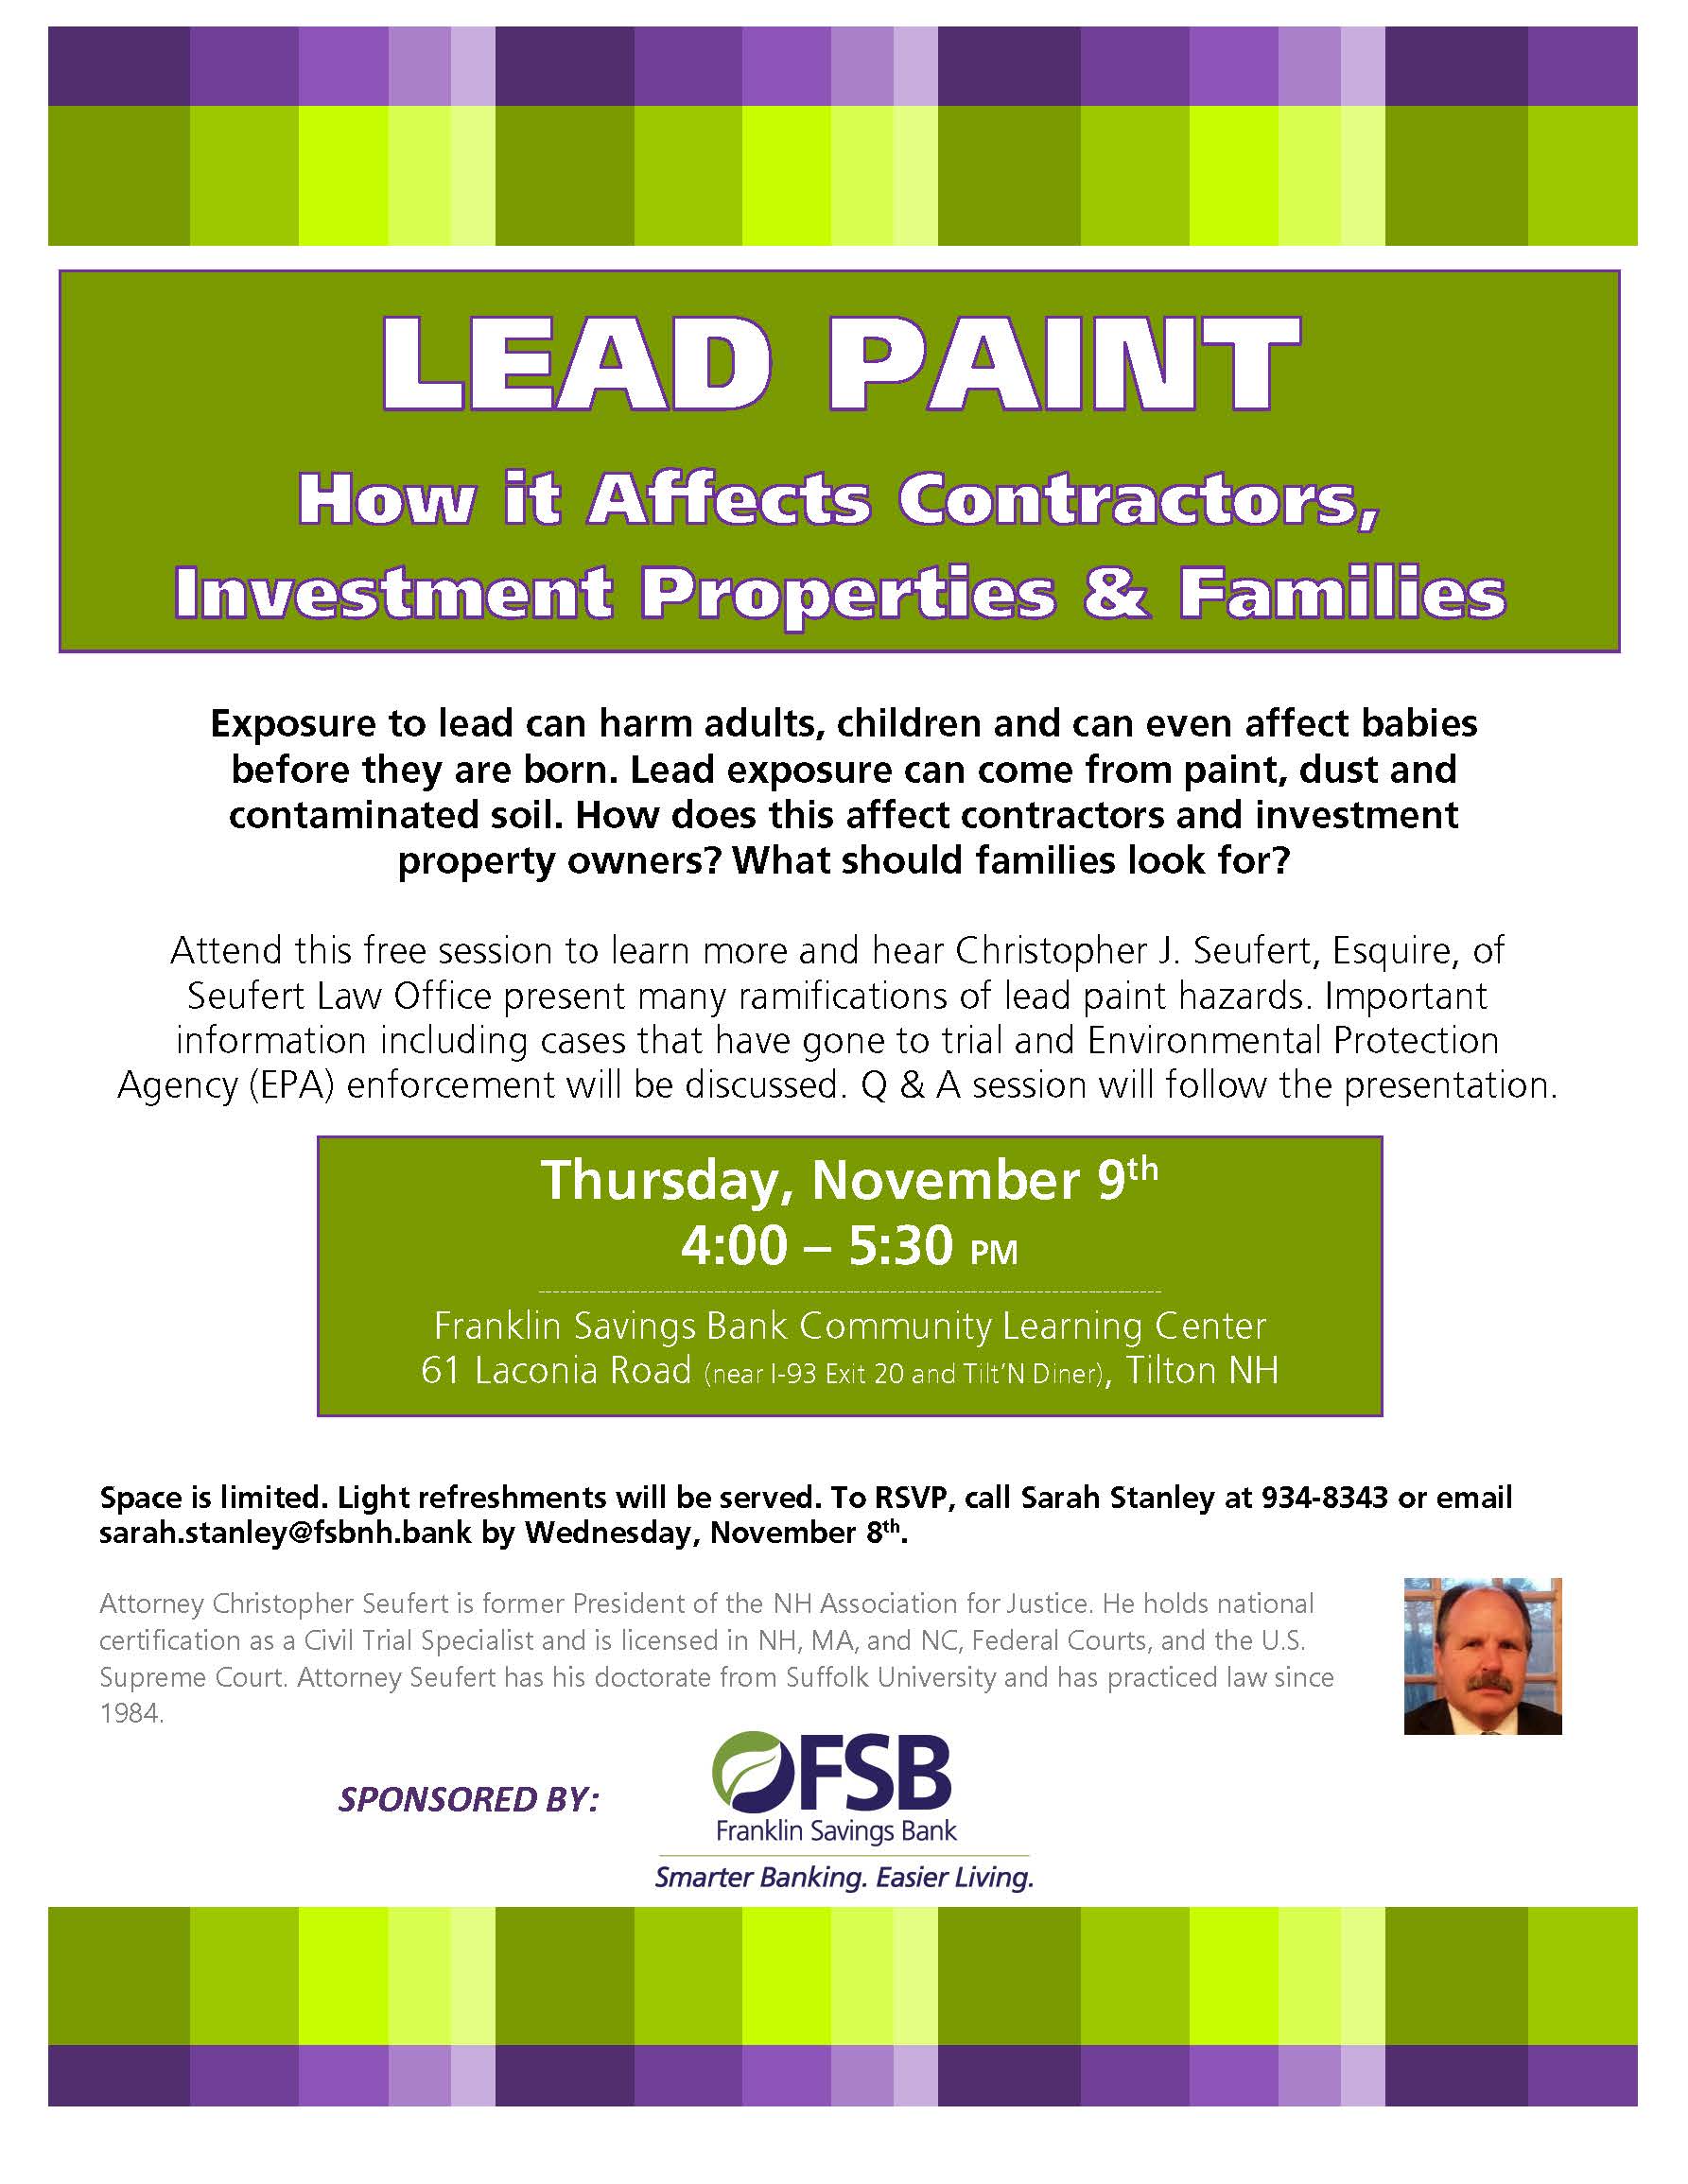 lead-paint-seminar-seufert-law